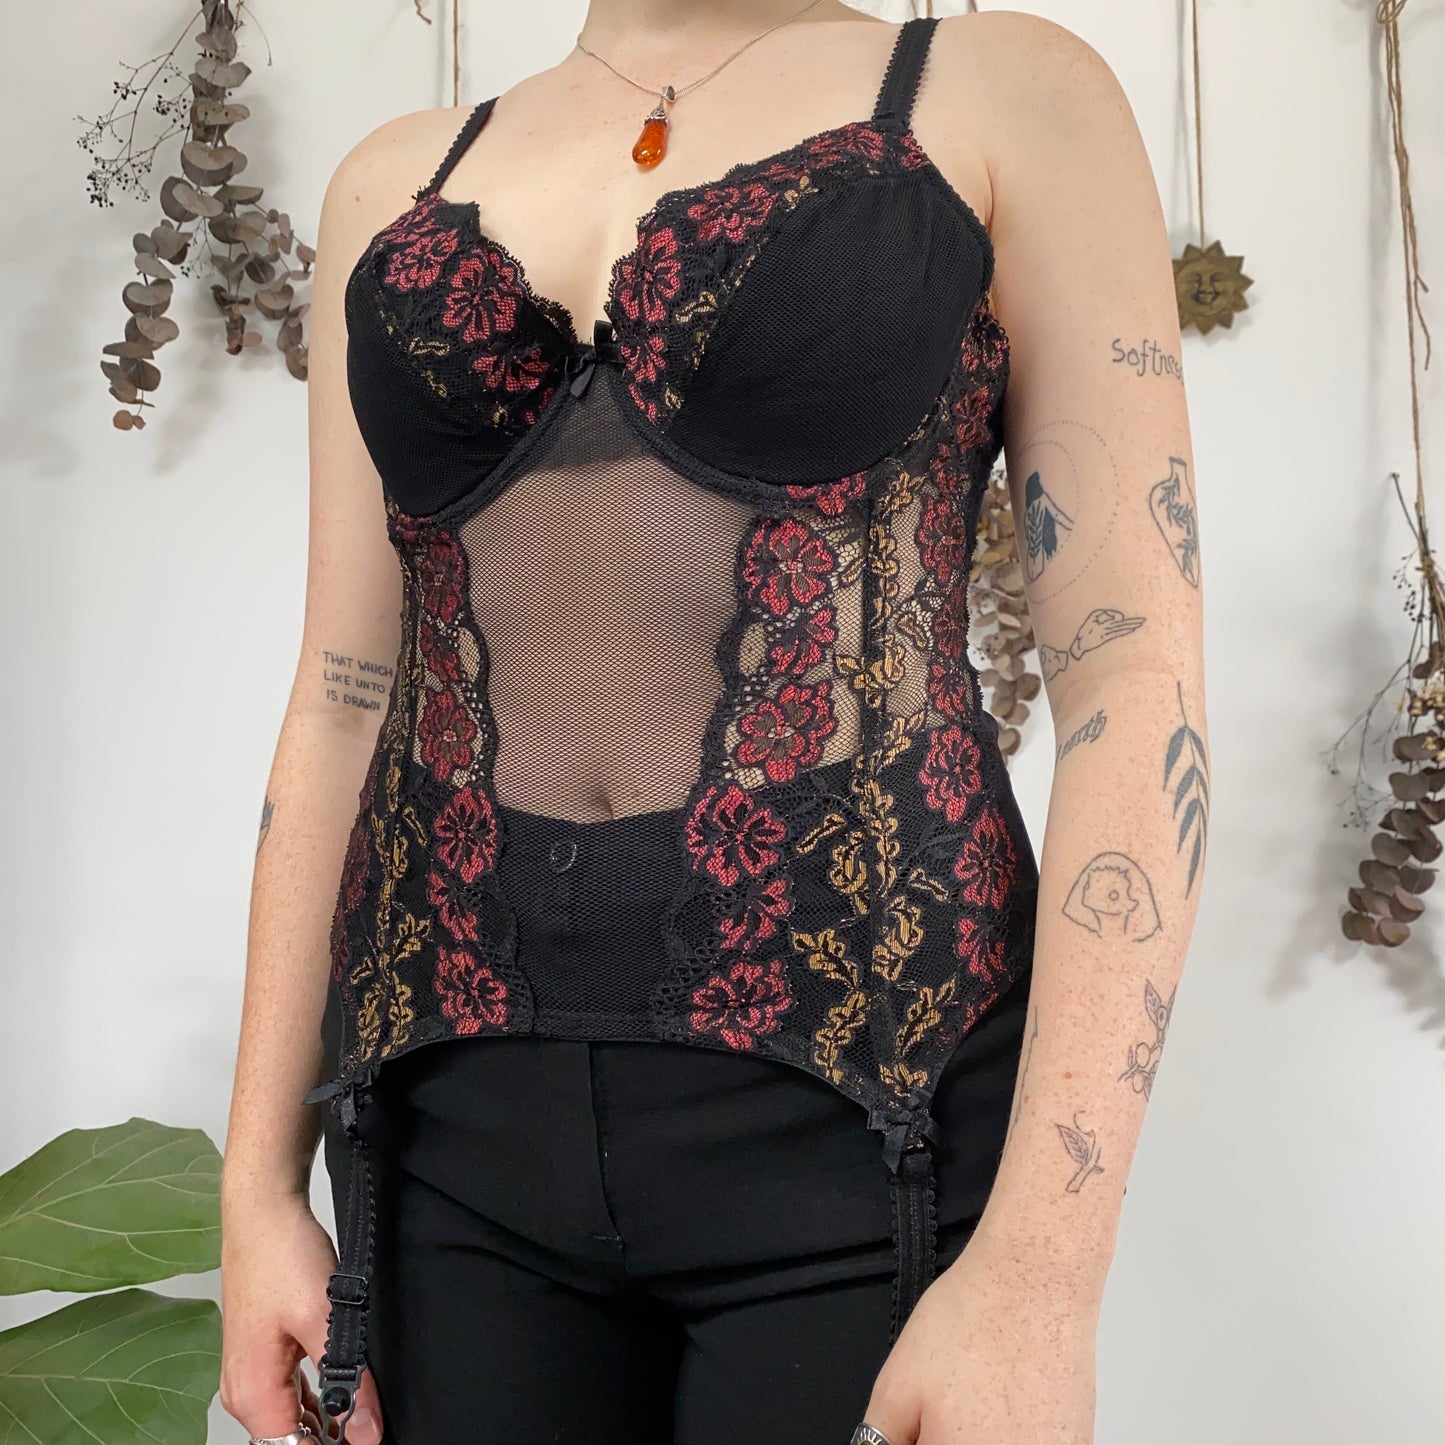 Floral corset - size 34E